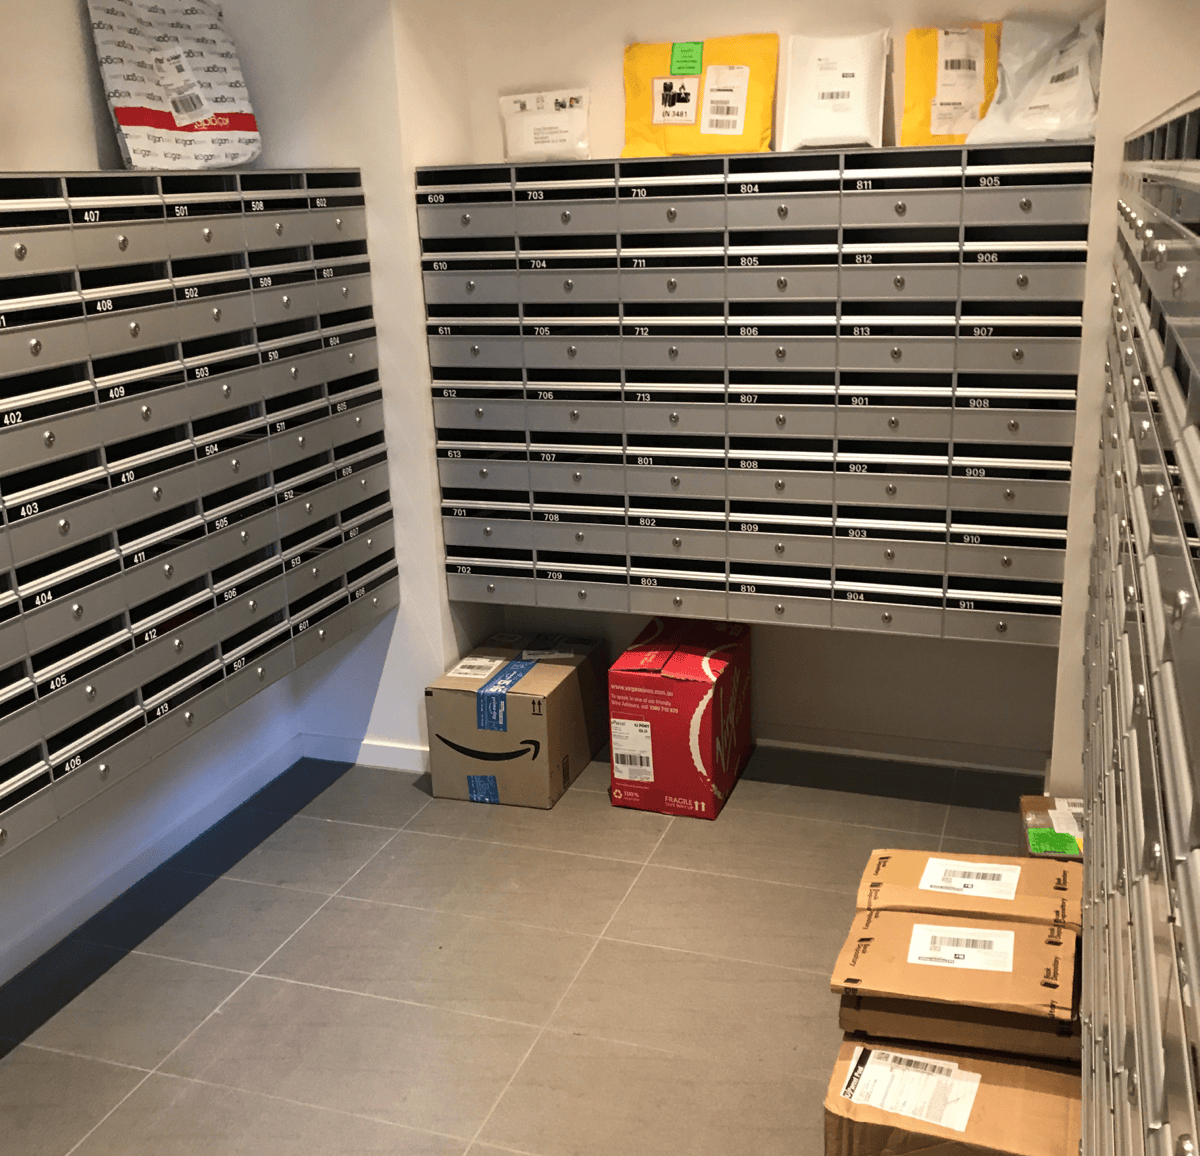 The parcel problem requiring a parcel locker solution